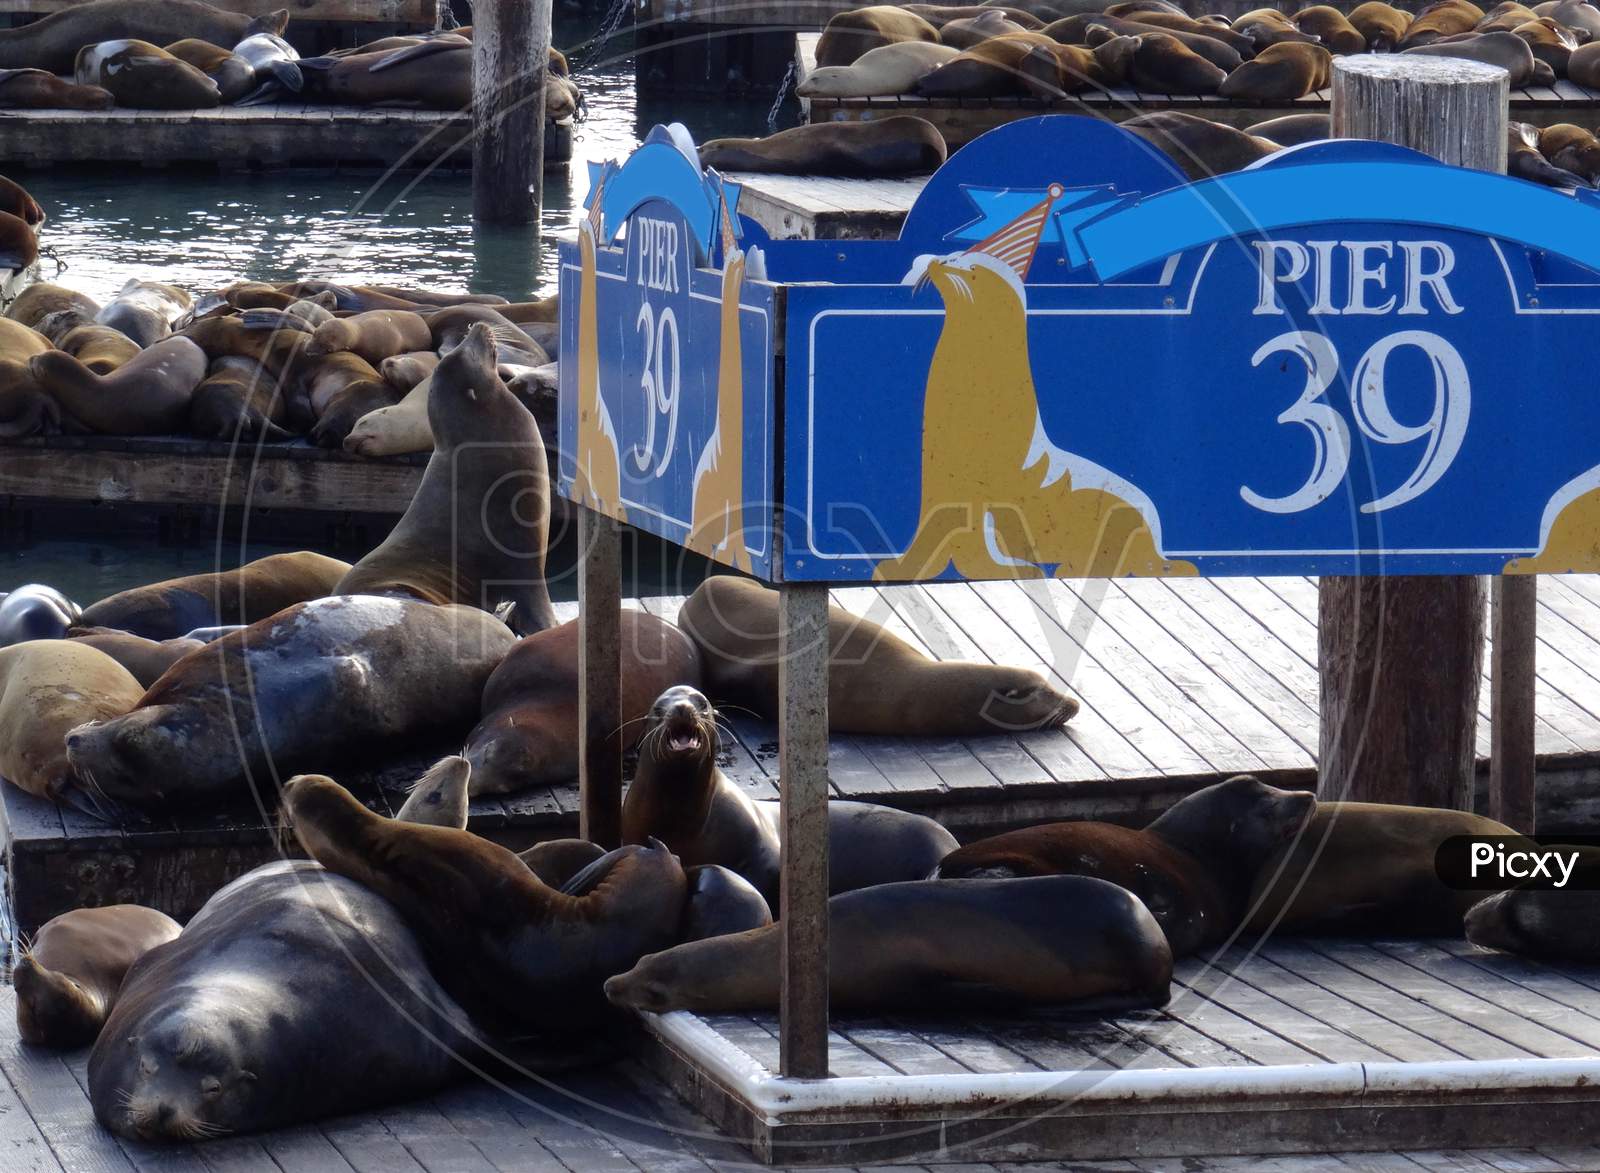 2,618 Pier 39 Sea Lions Images, Stock Photos, 3D objects, & Vectors